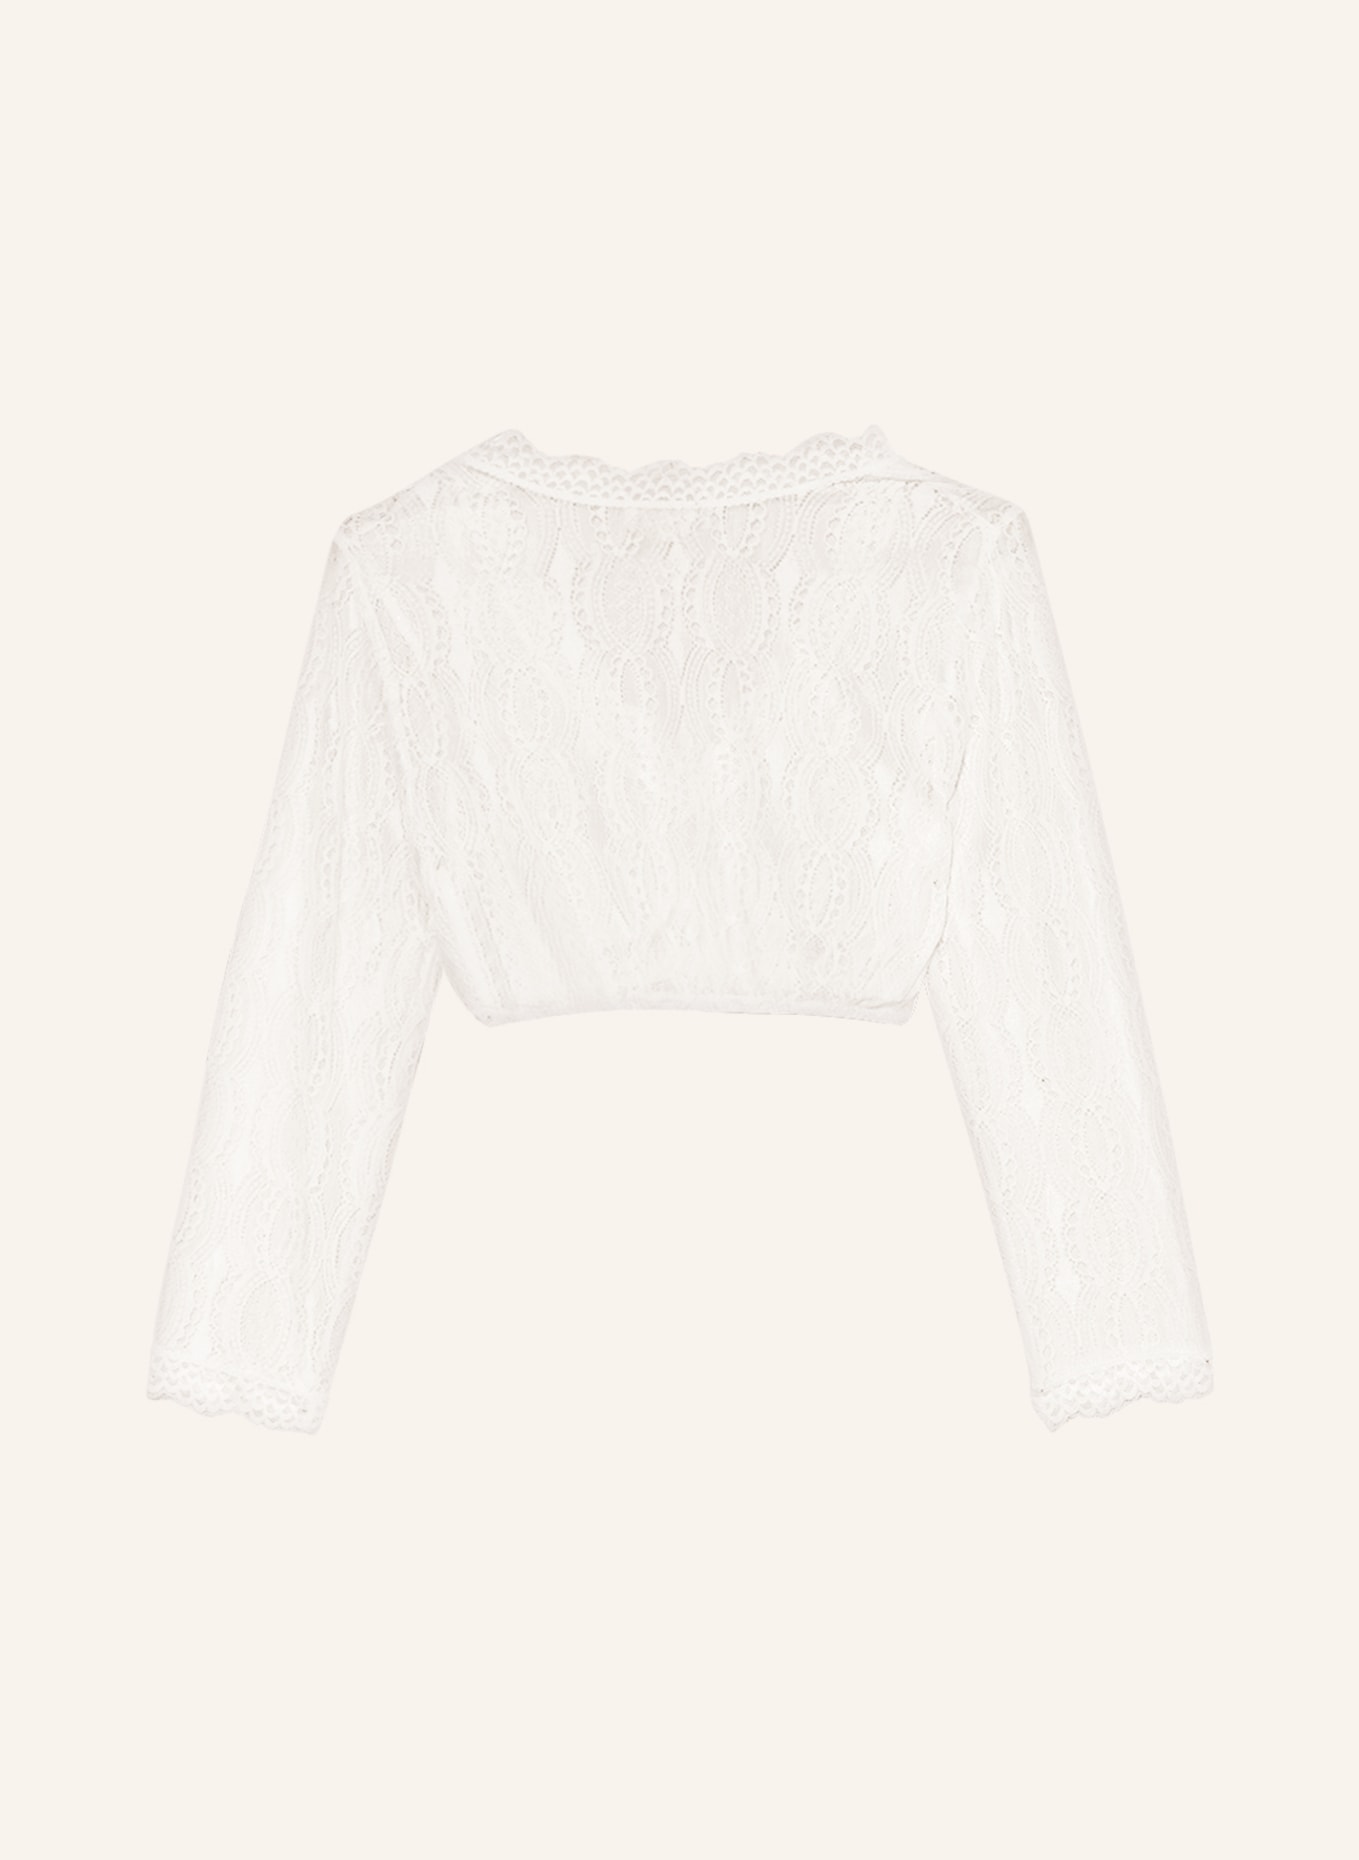 KRÜGER Dirndl blouse, Color: CREAM (Image 2)